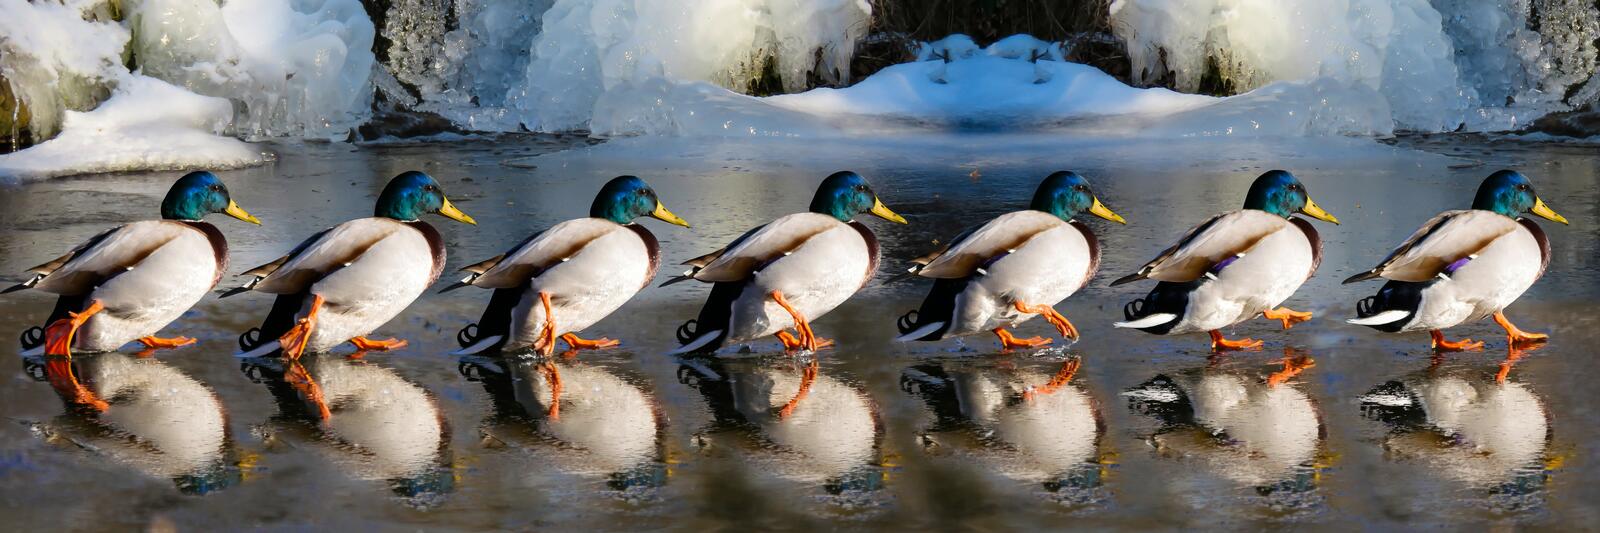 免费照片冬天的鸭子在冰面上互相追逐。